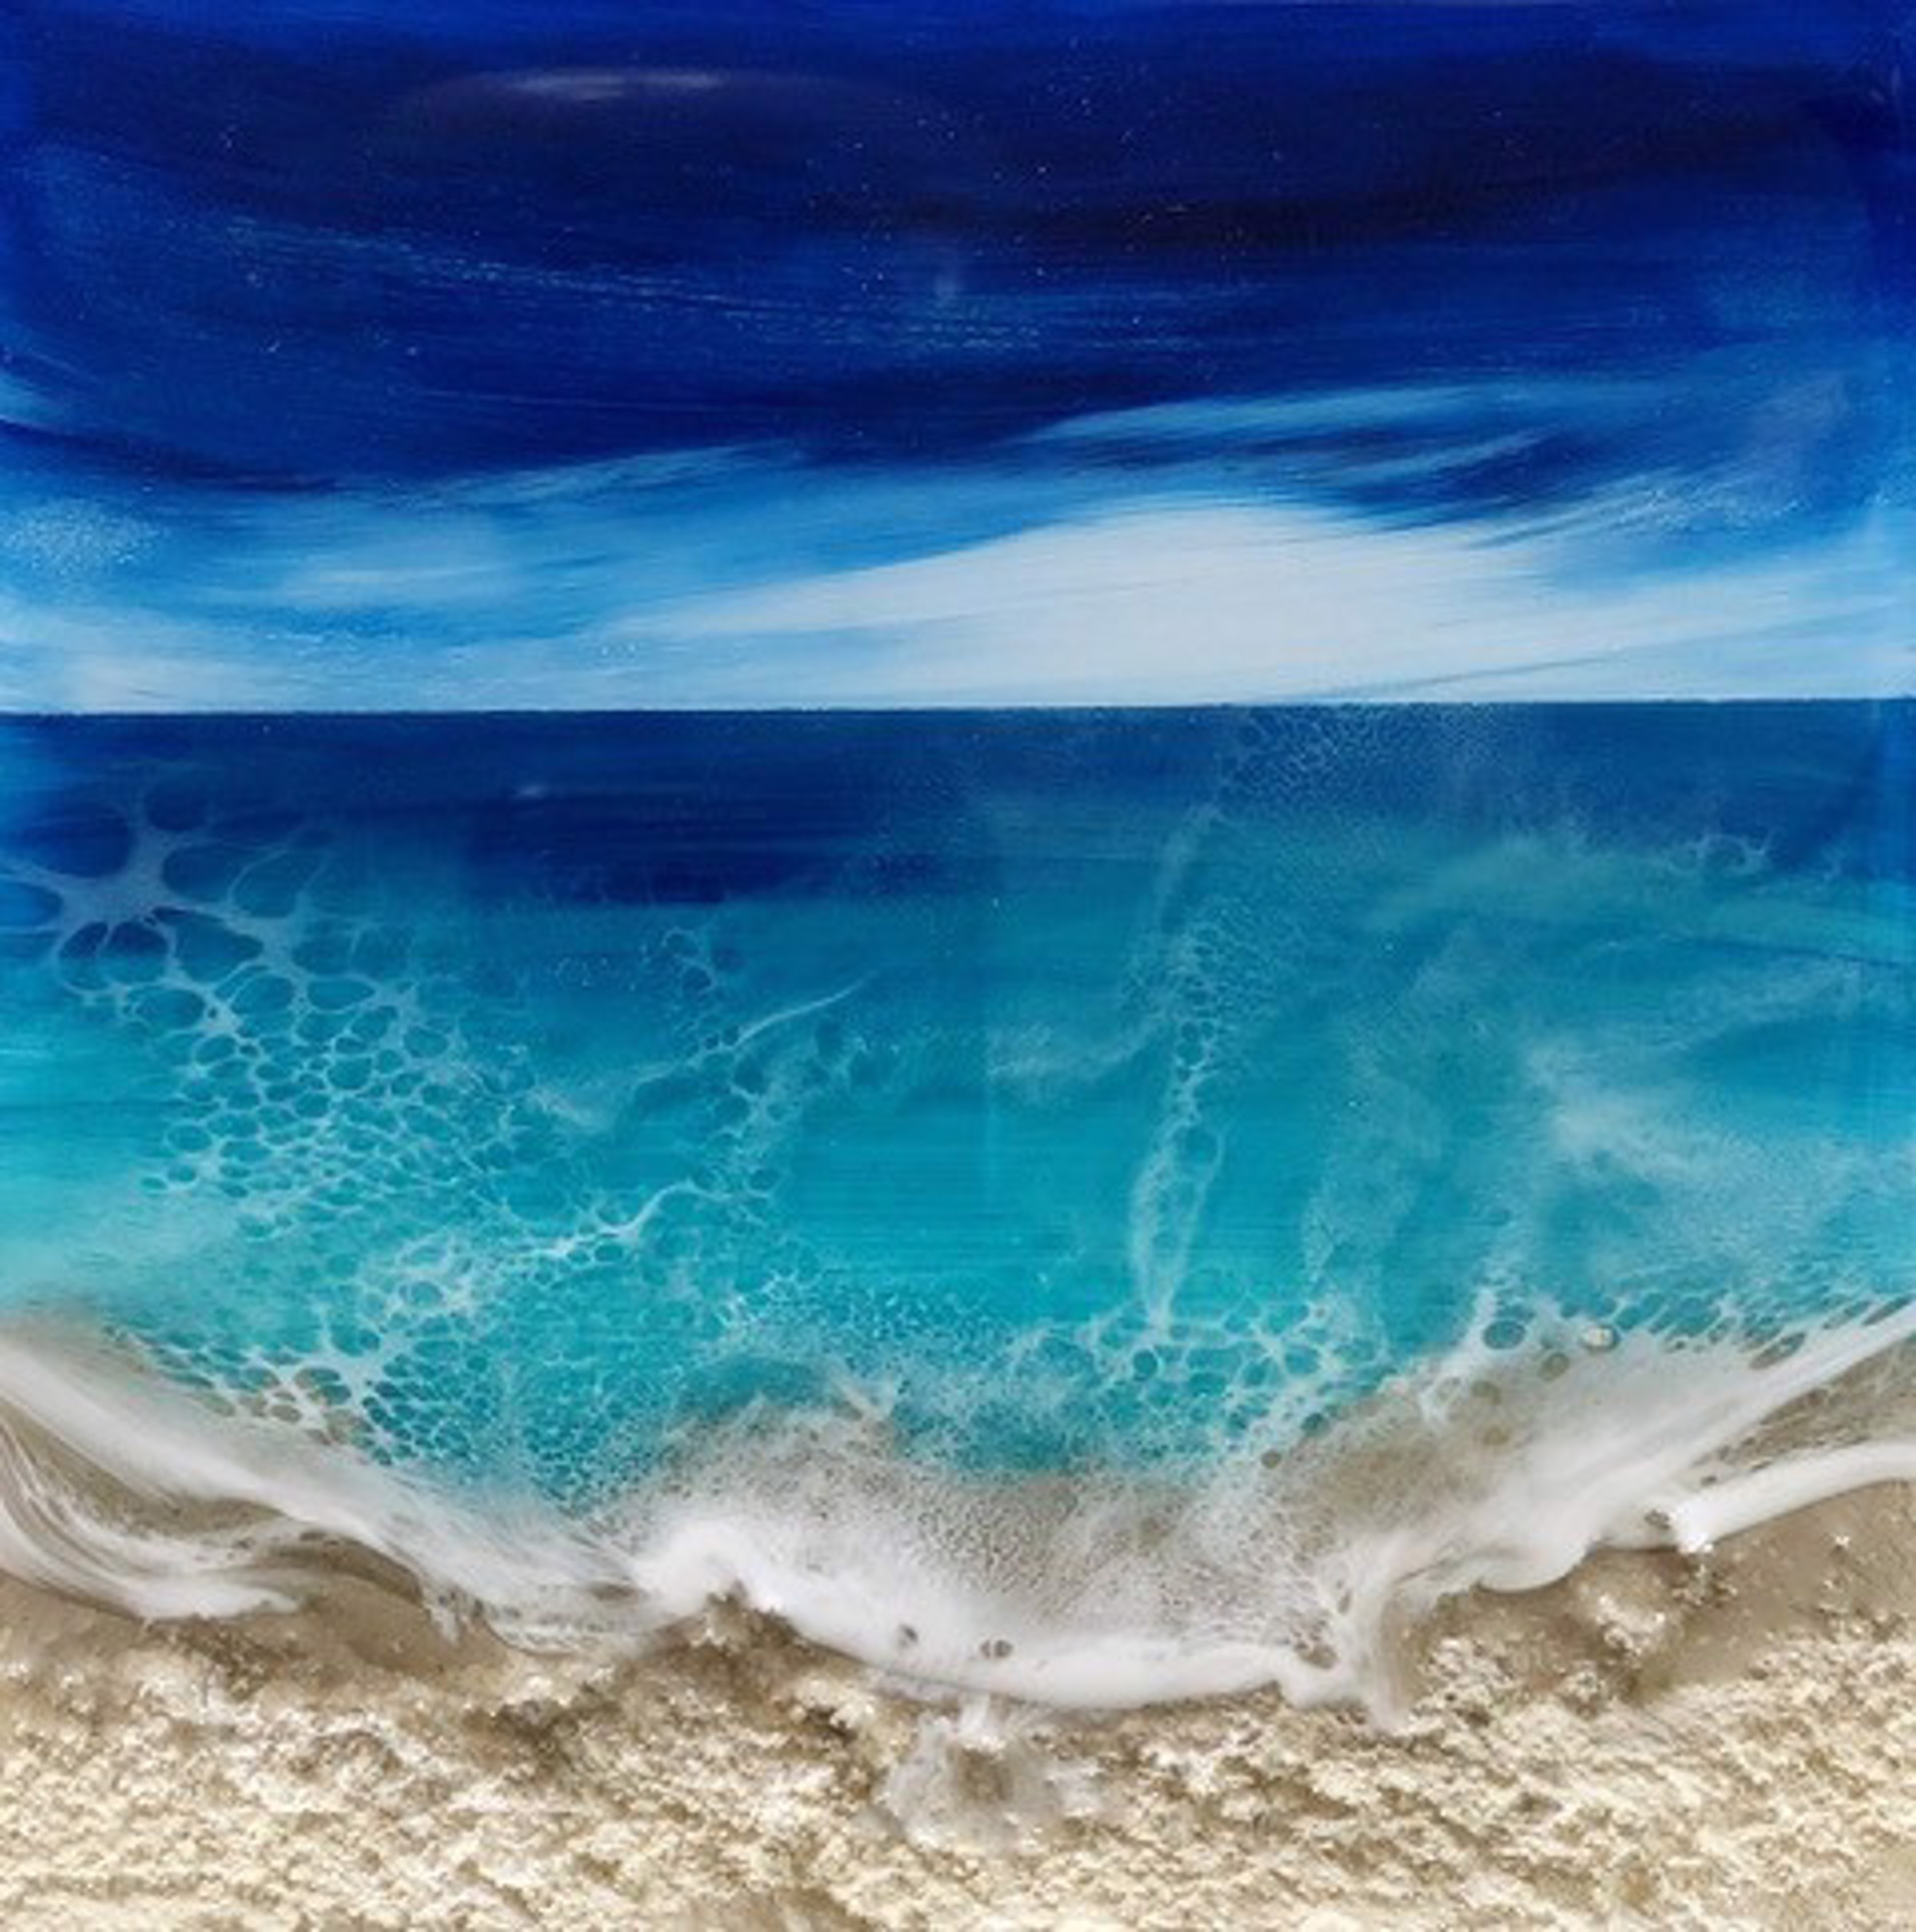 Ocean Waves #12 by Ana Hefco